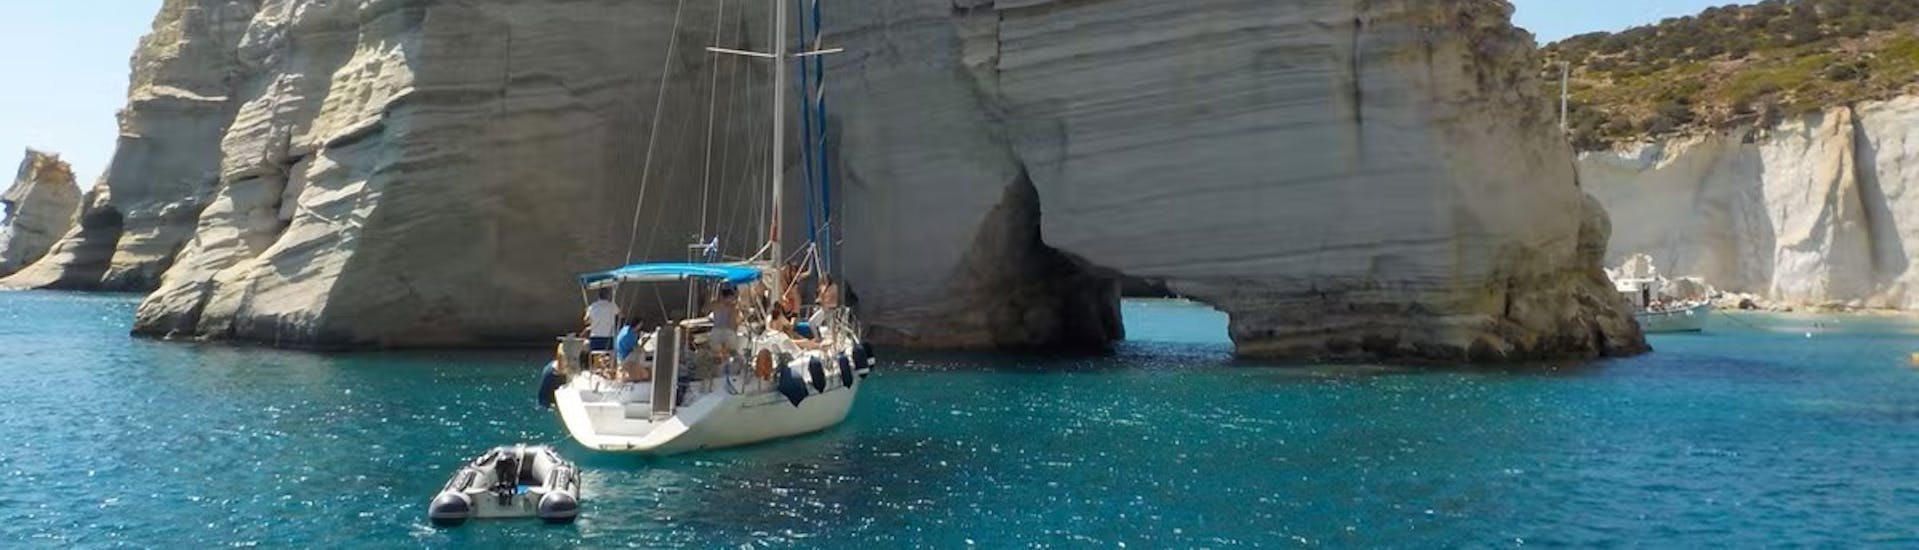 Gita in barca a vela intorno a Milos e Polyaigos con pranzo.